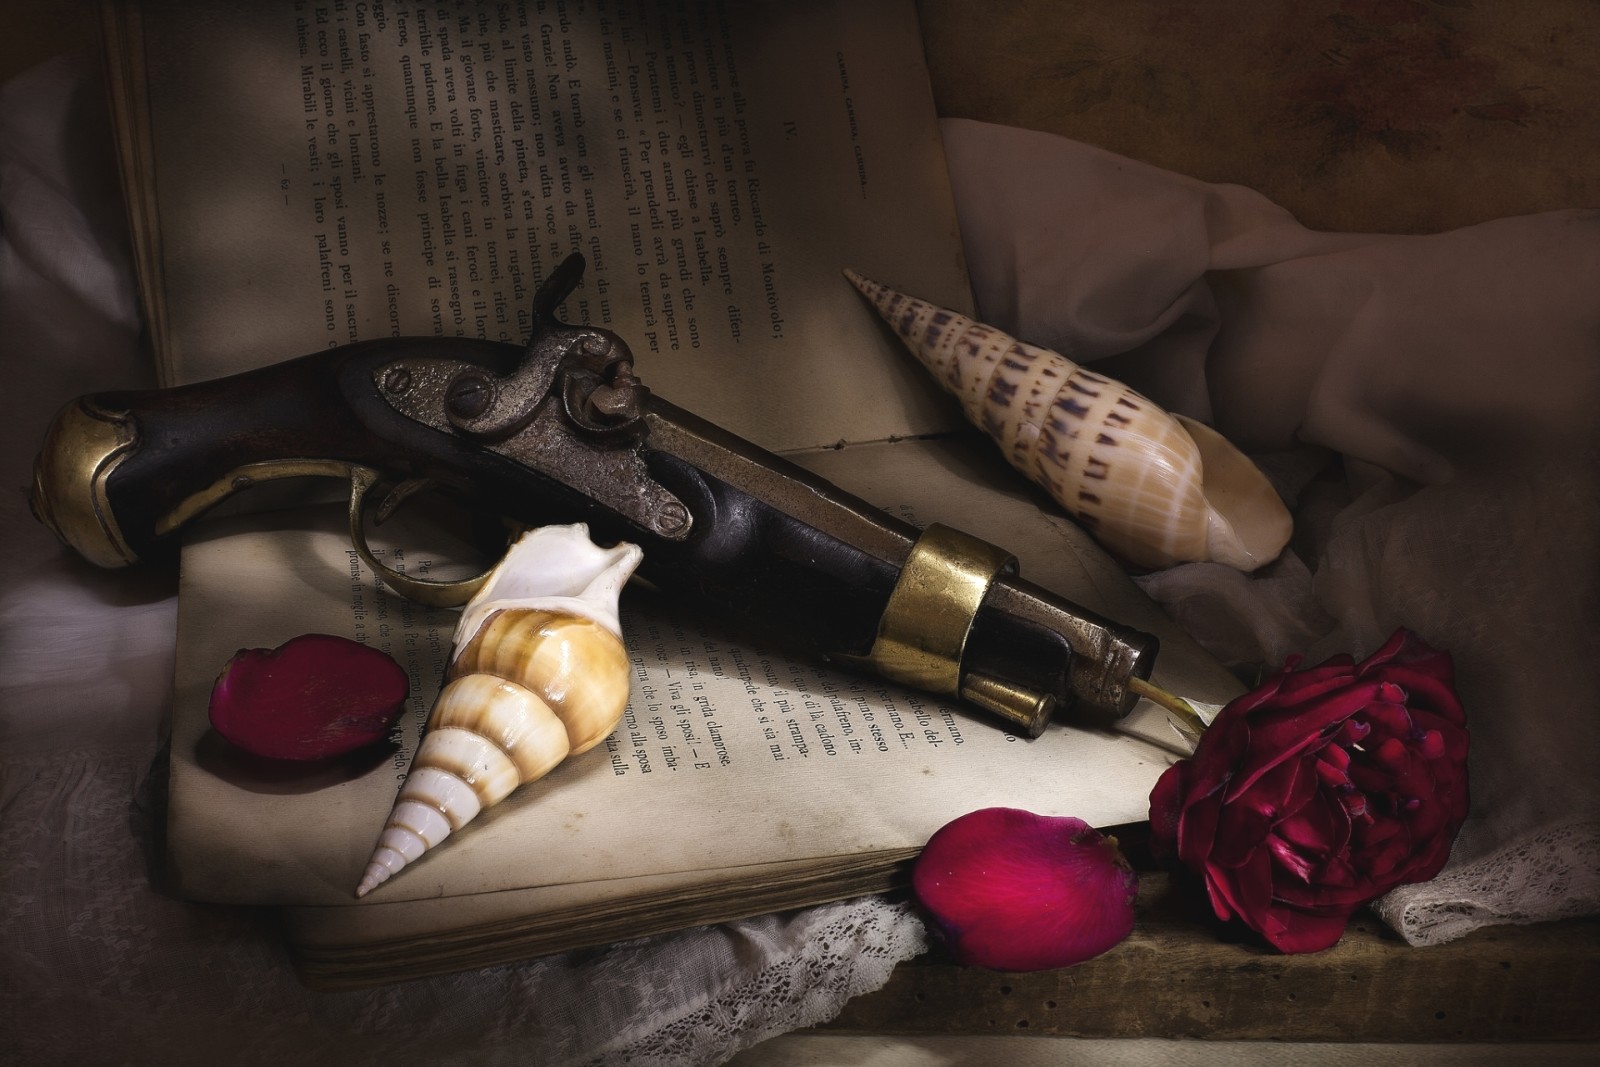 Cuộc sống tĩnh lặng, kết cấu, Hoa hồng, sách, cánh hoa, vỏ, súng